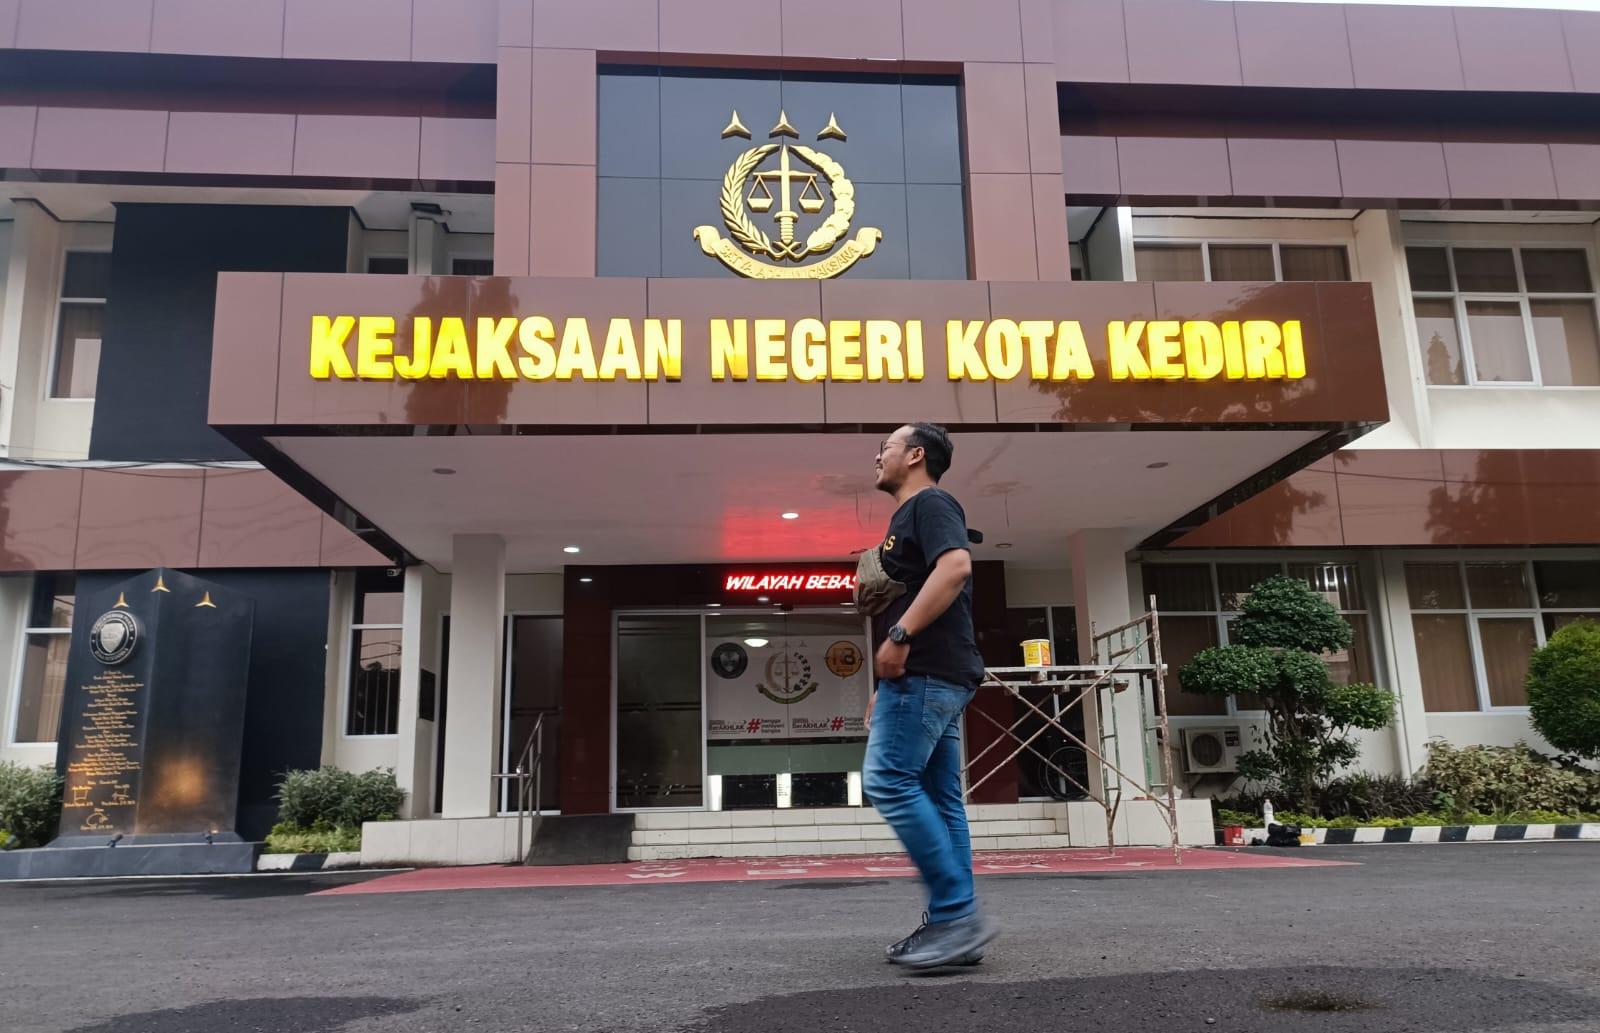 Kejaksaan Negeri Kota Kediri akan menerima berkas kasus KDRT Venna Melinda (Ubaidhillah/Metara)